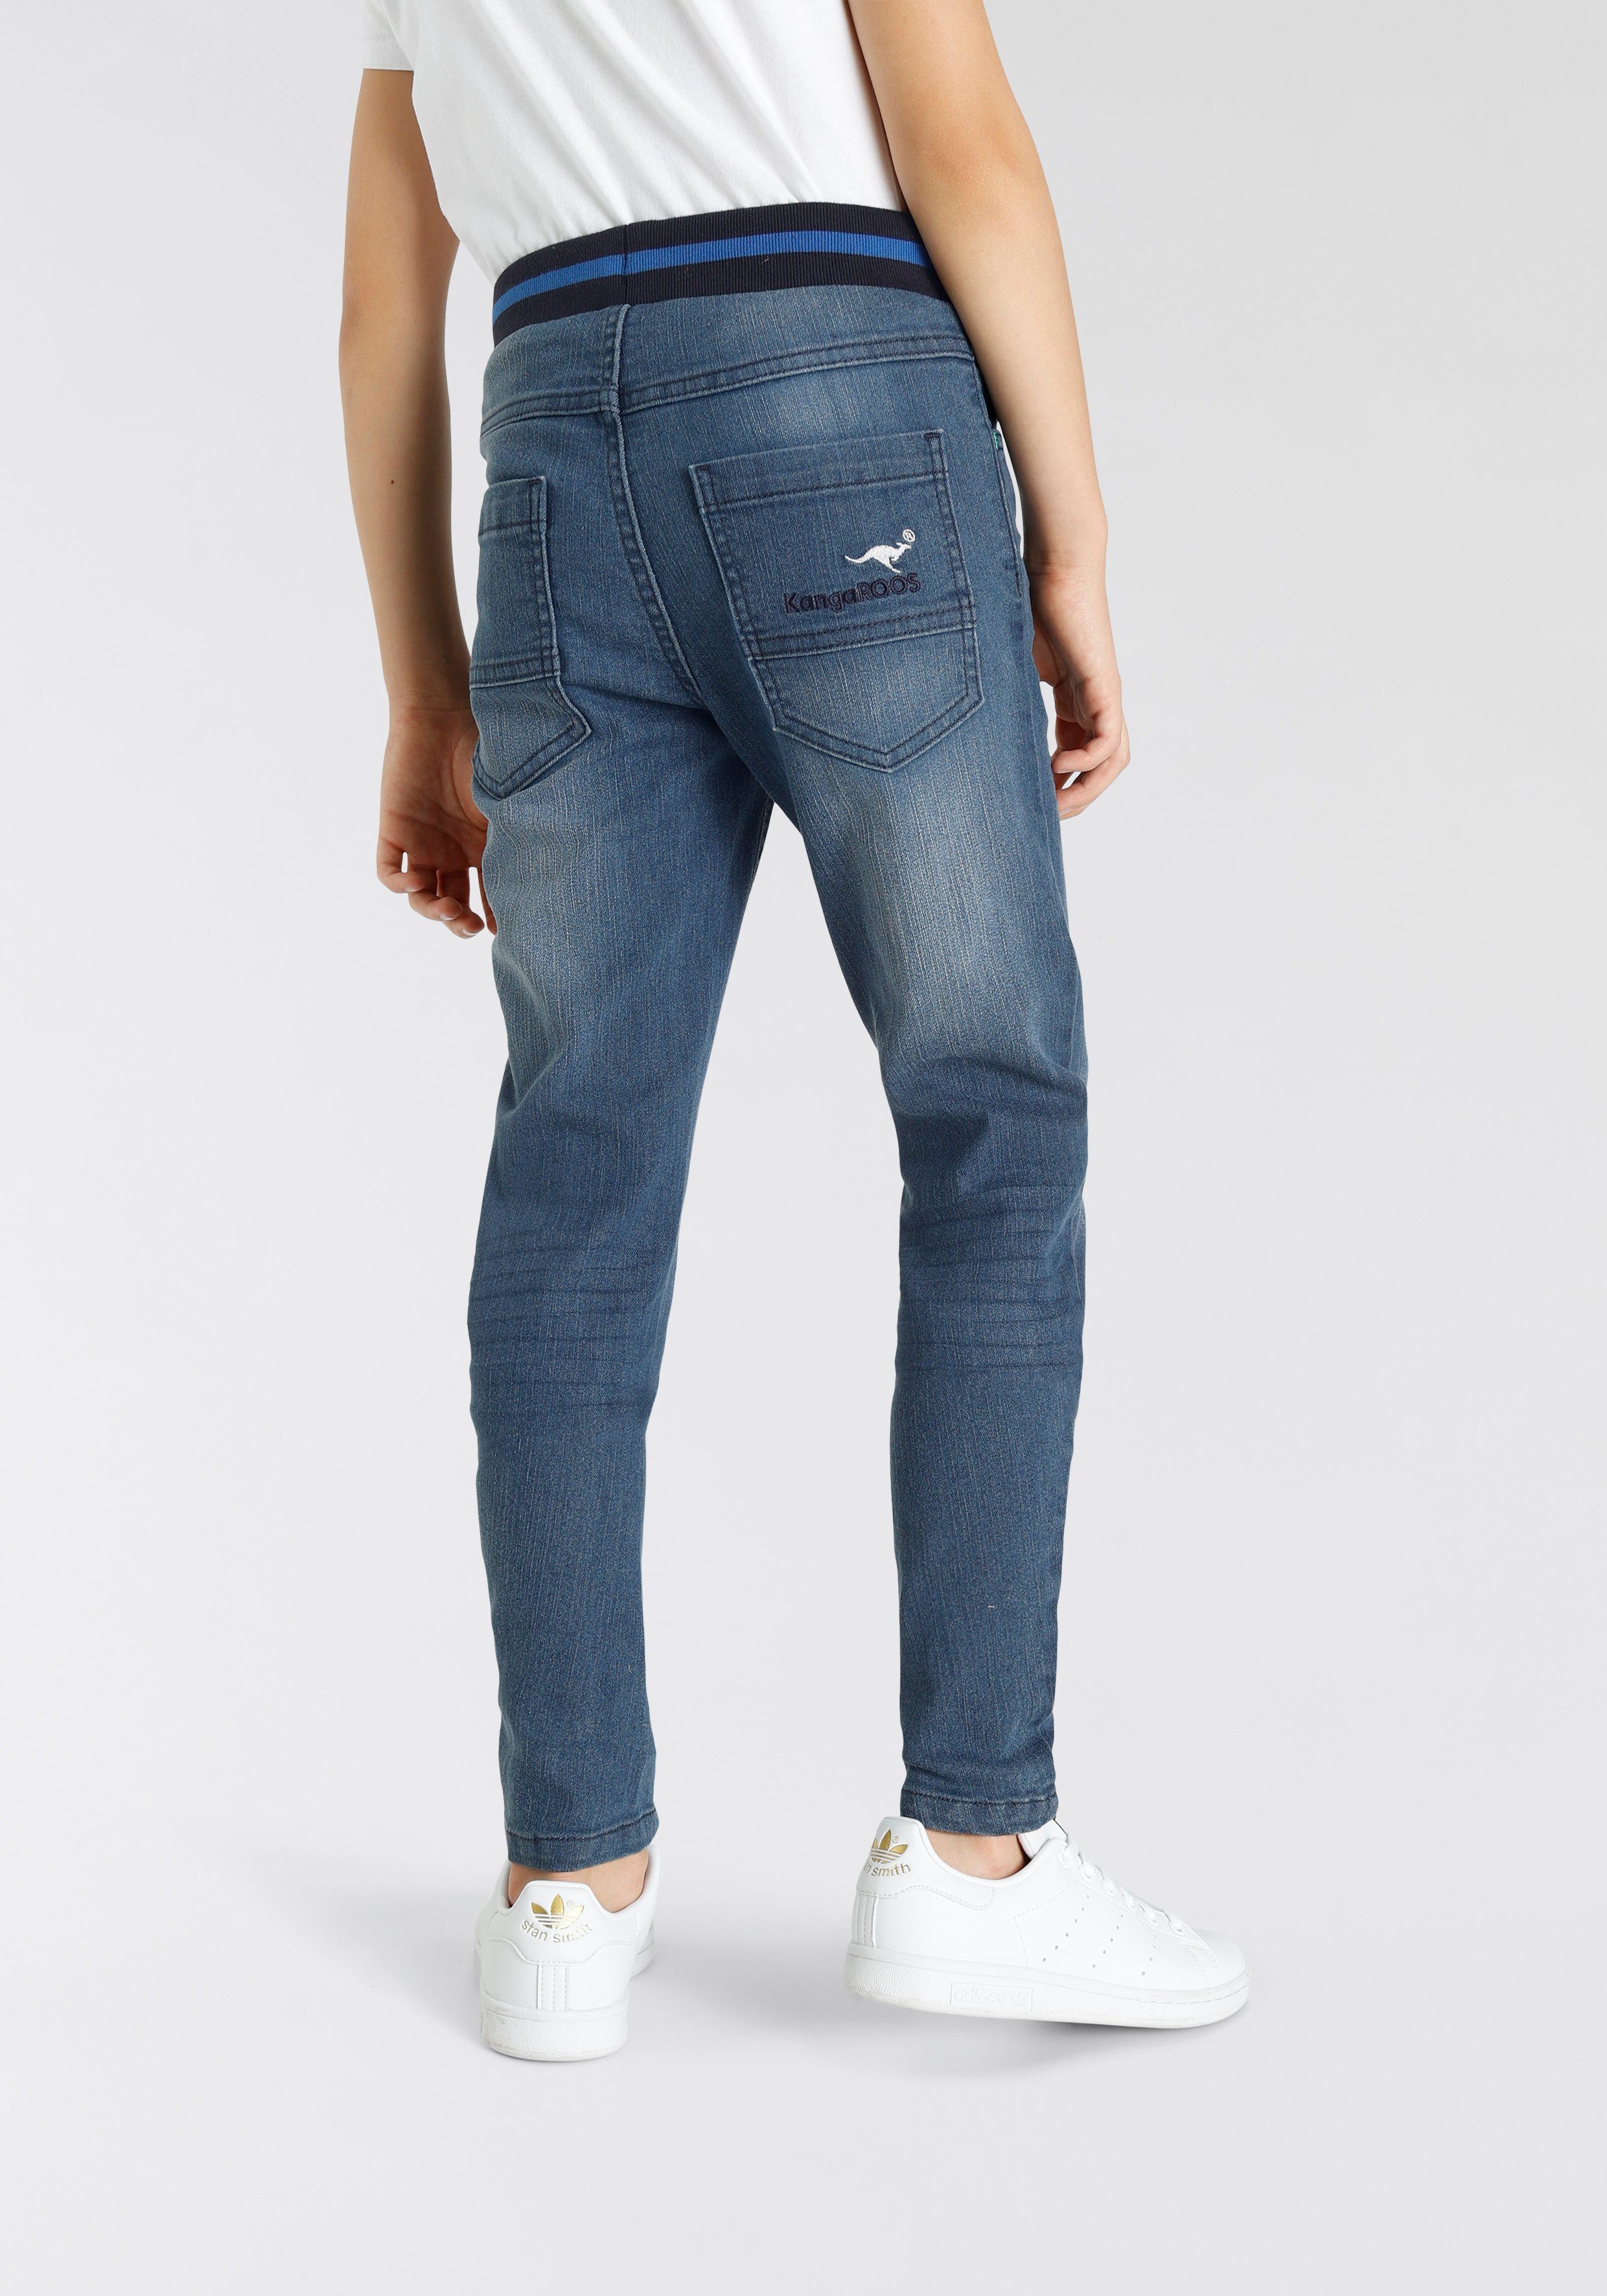 KangaROOS authentischer Waschung Stretch-Jeans Denim in